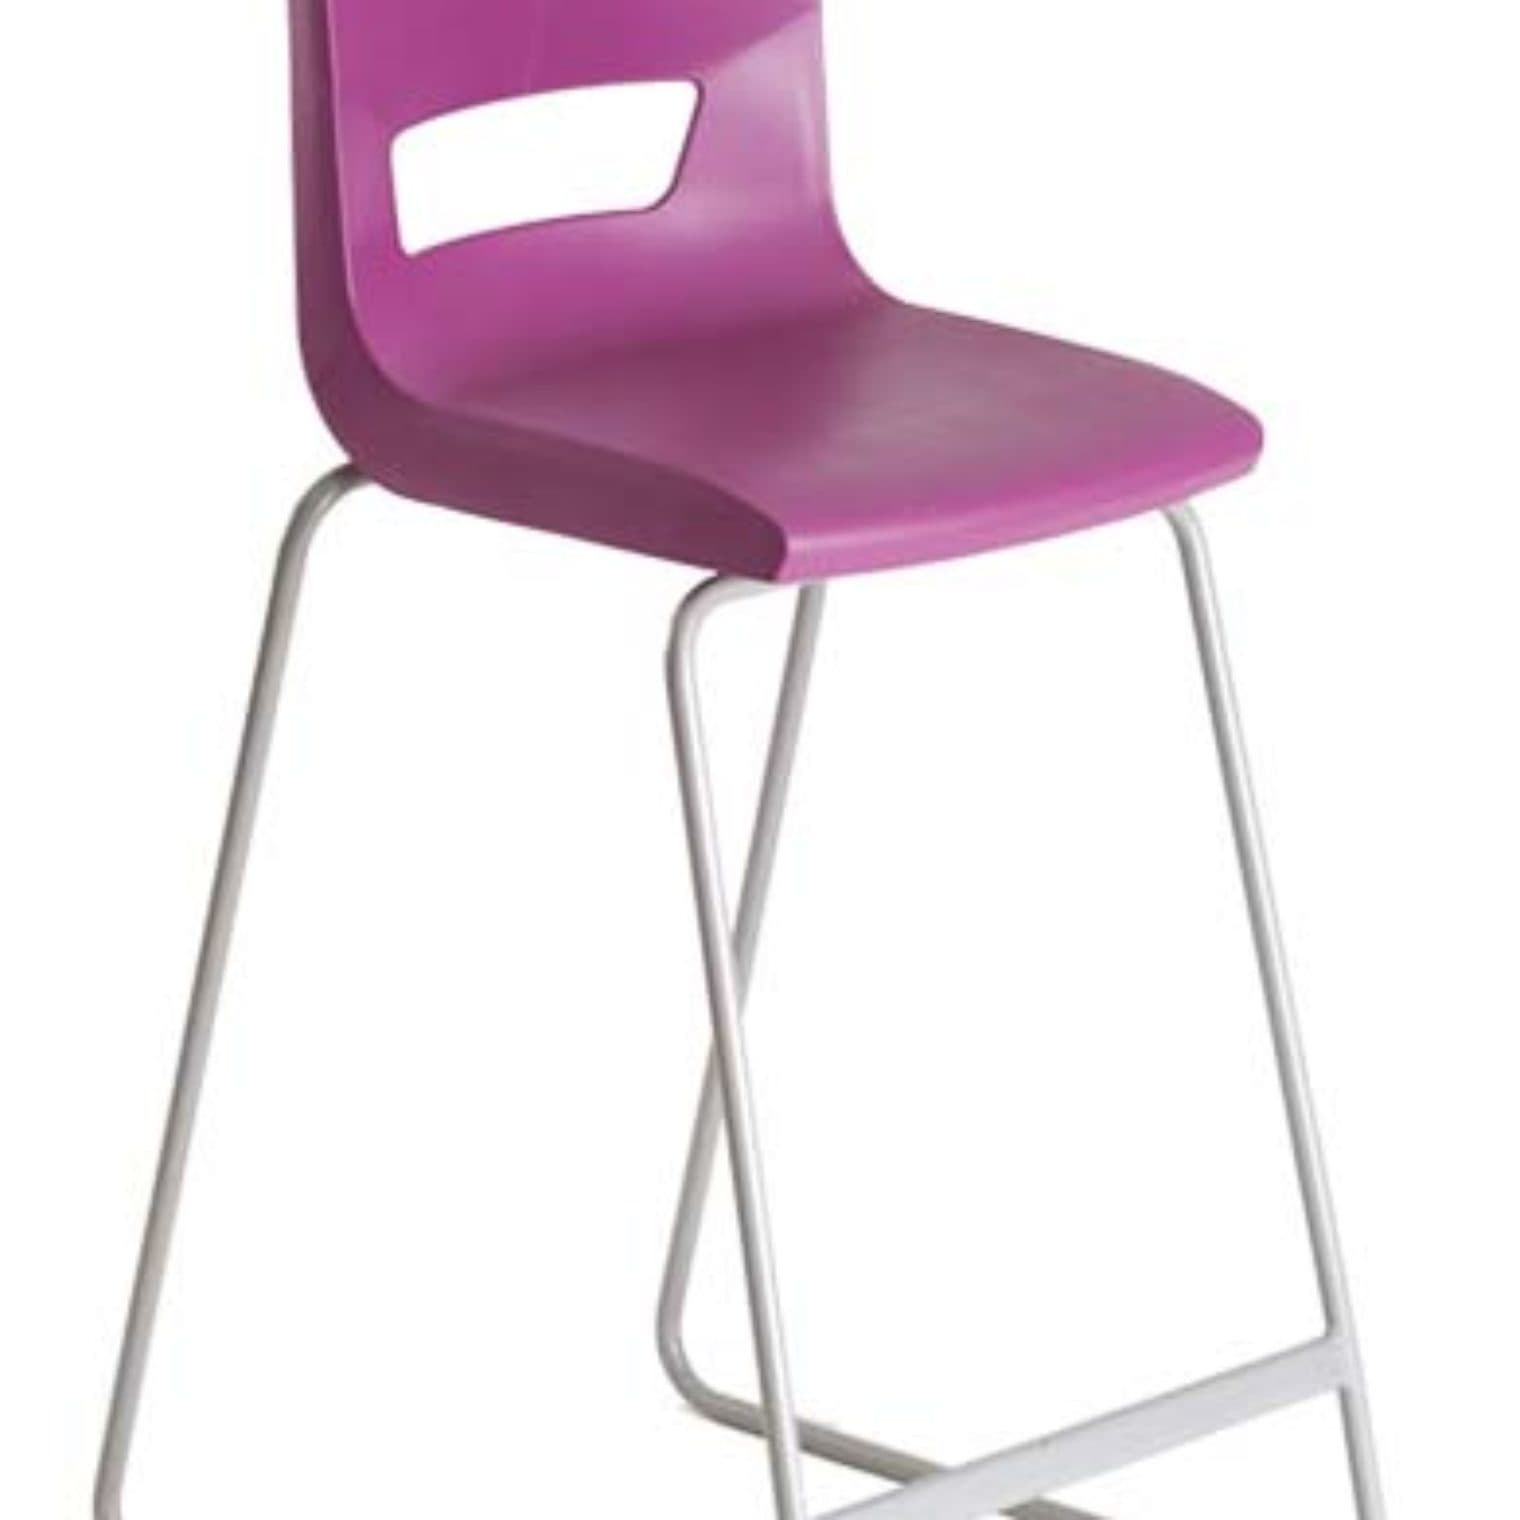 Pennine posture stool